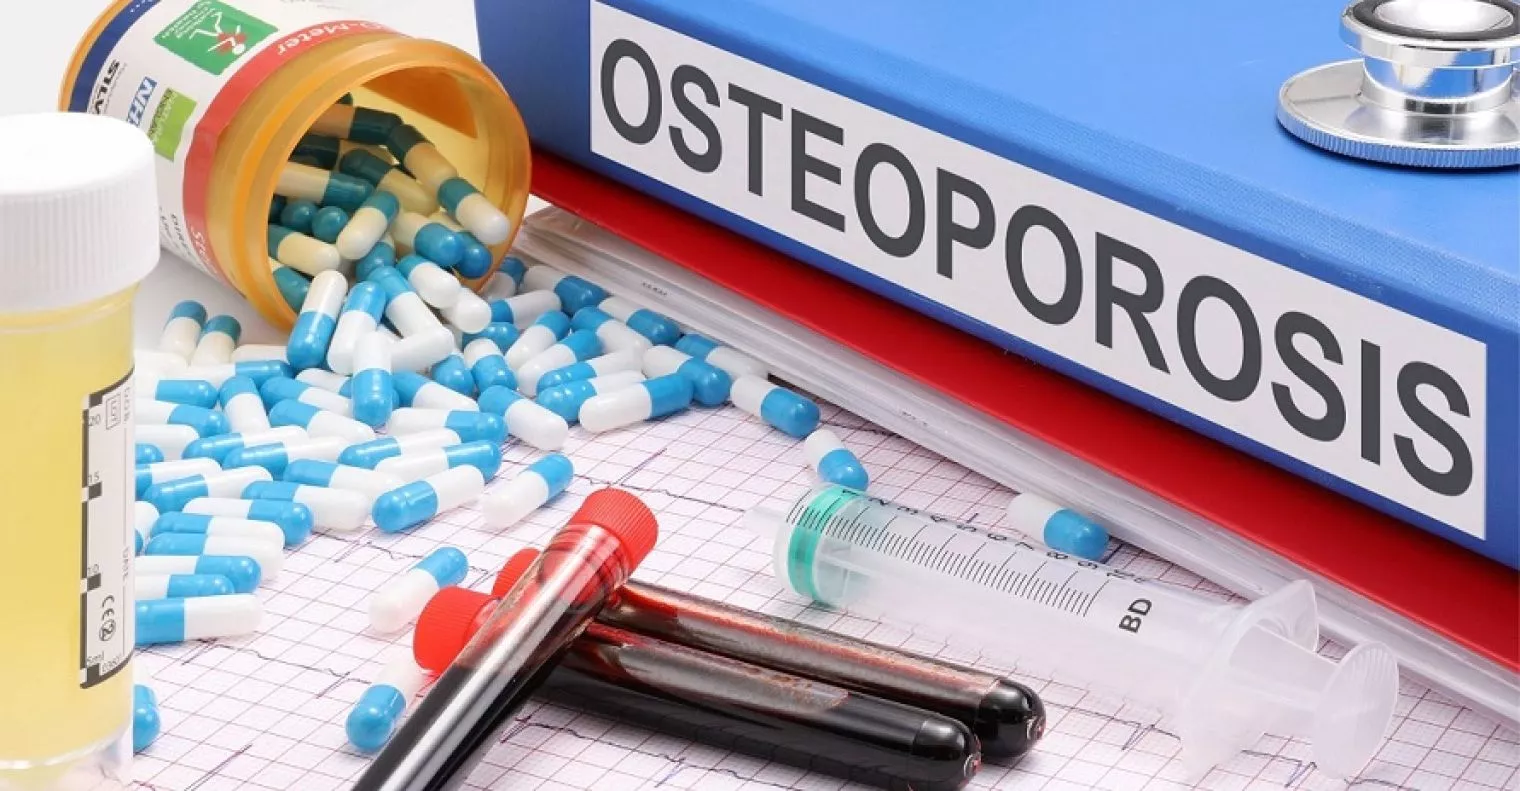 Mengenal Osteoporosis: Bagaimana Kondisinya di Indonesia?